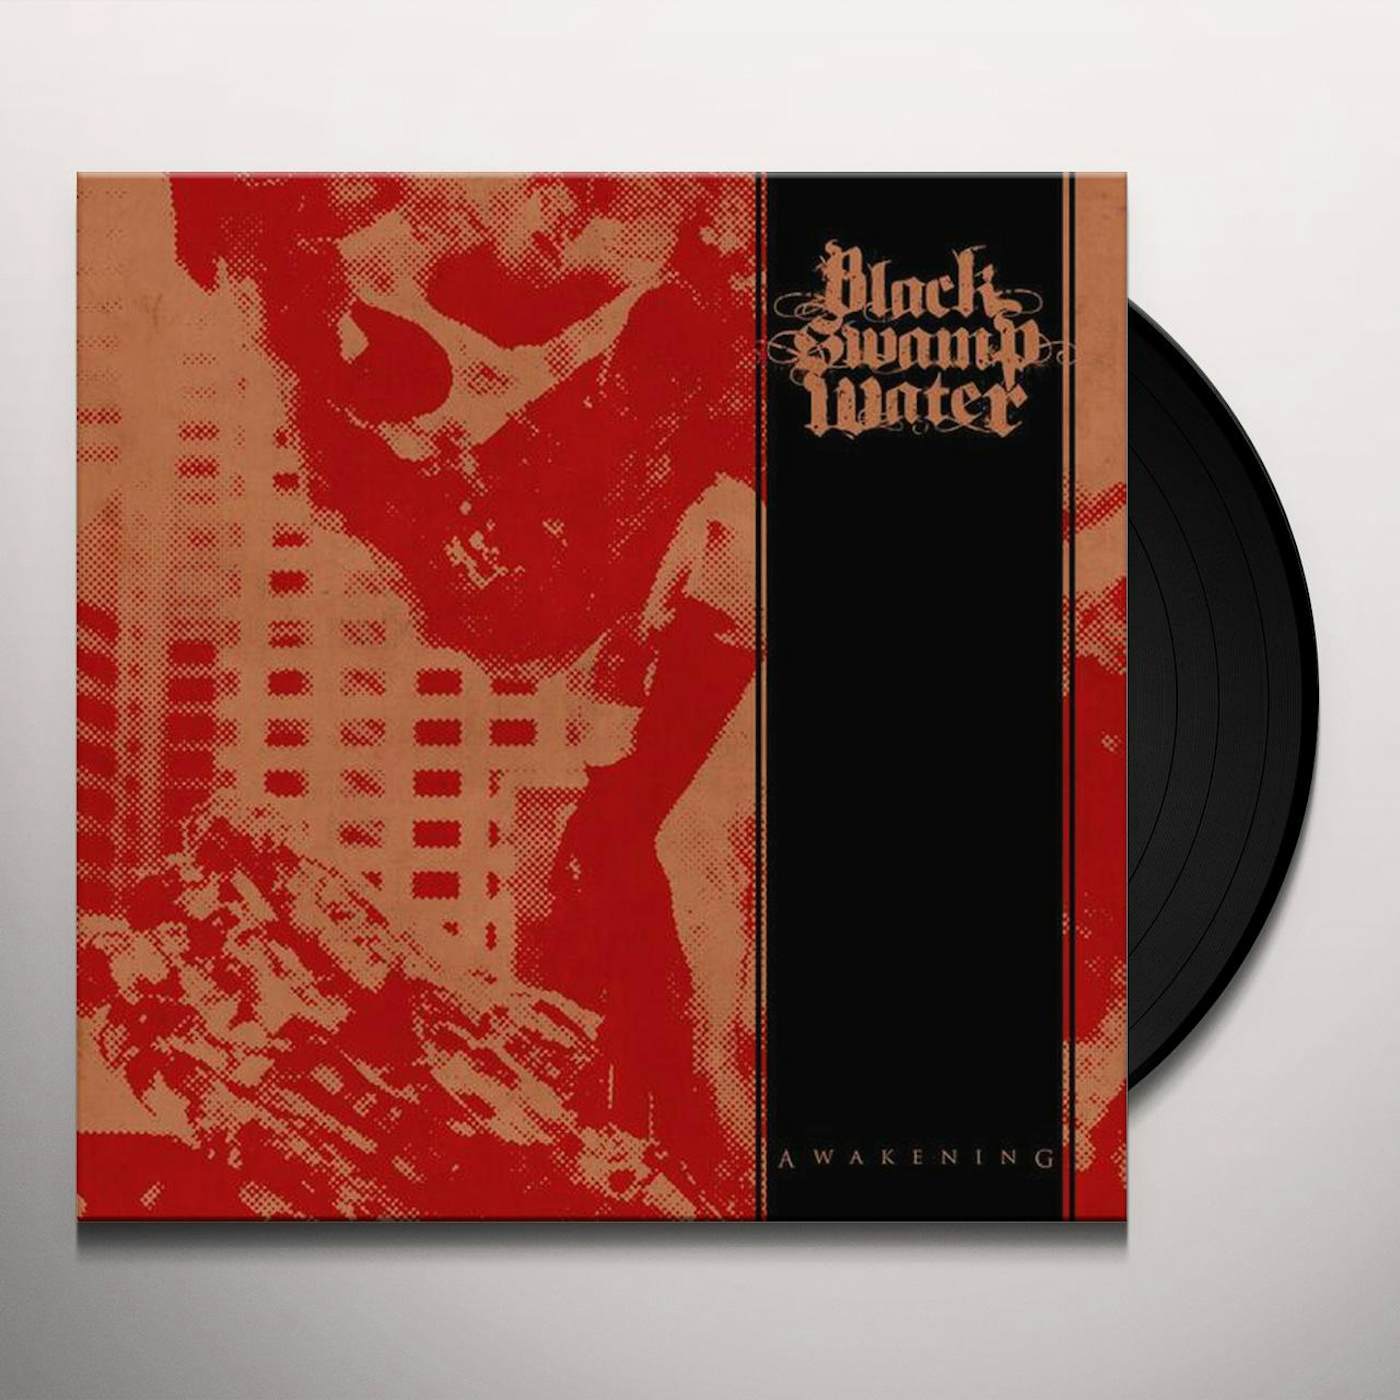 Black Swamp Water Awakening Vinyl Record